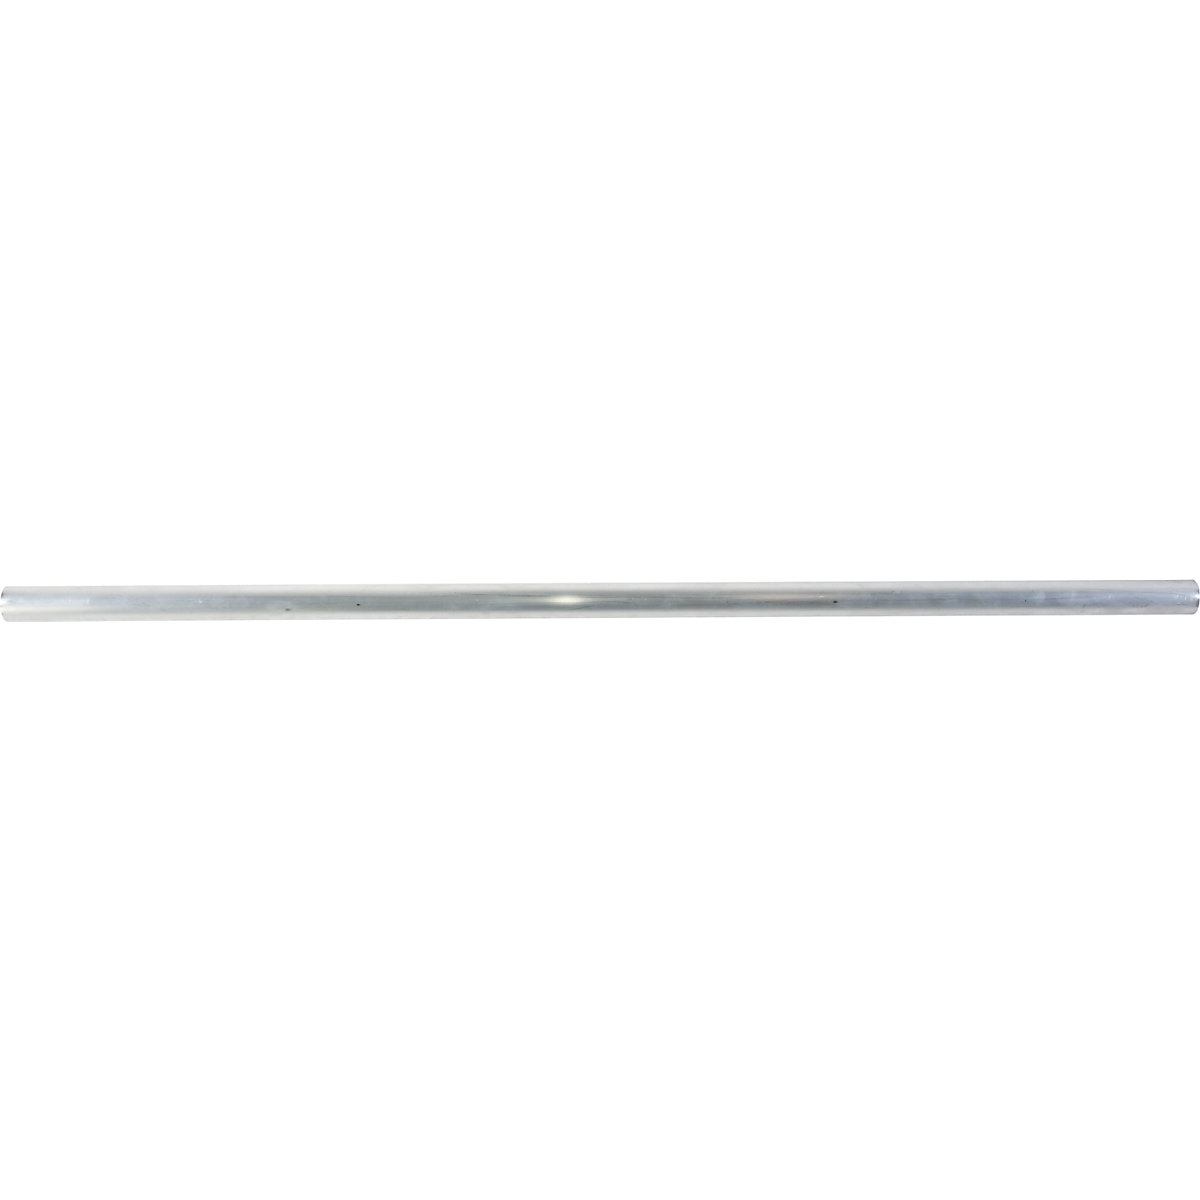 Rails en tube rond – KRAUSE, longueur 3000 mm, aluminium anodisé-4